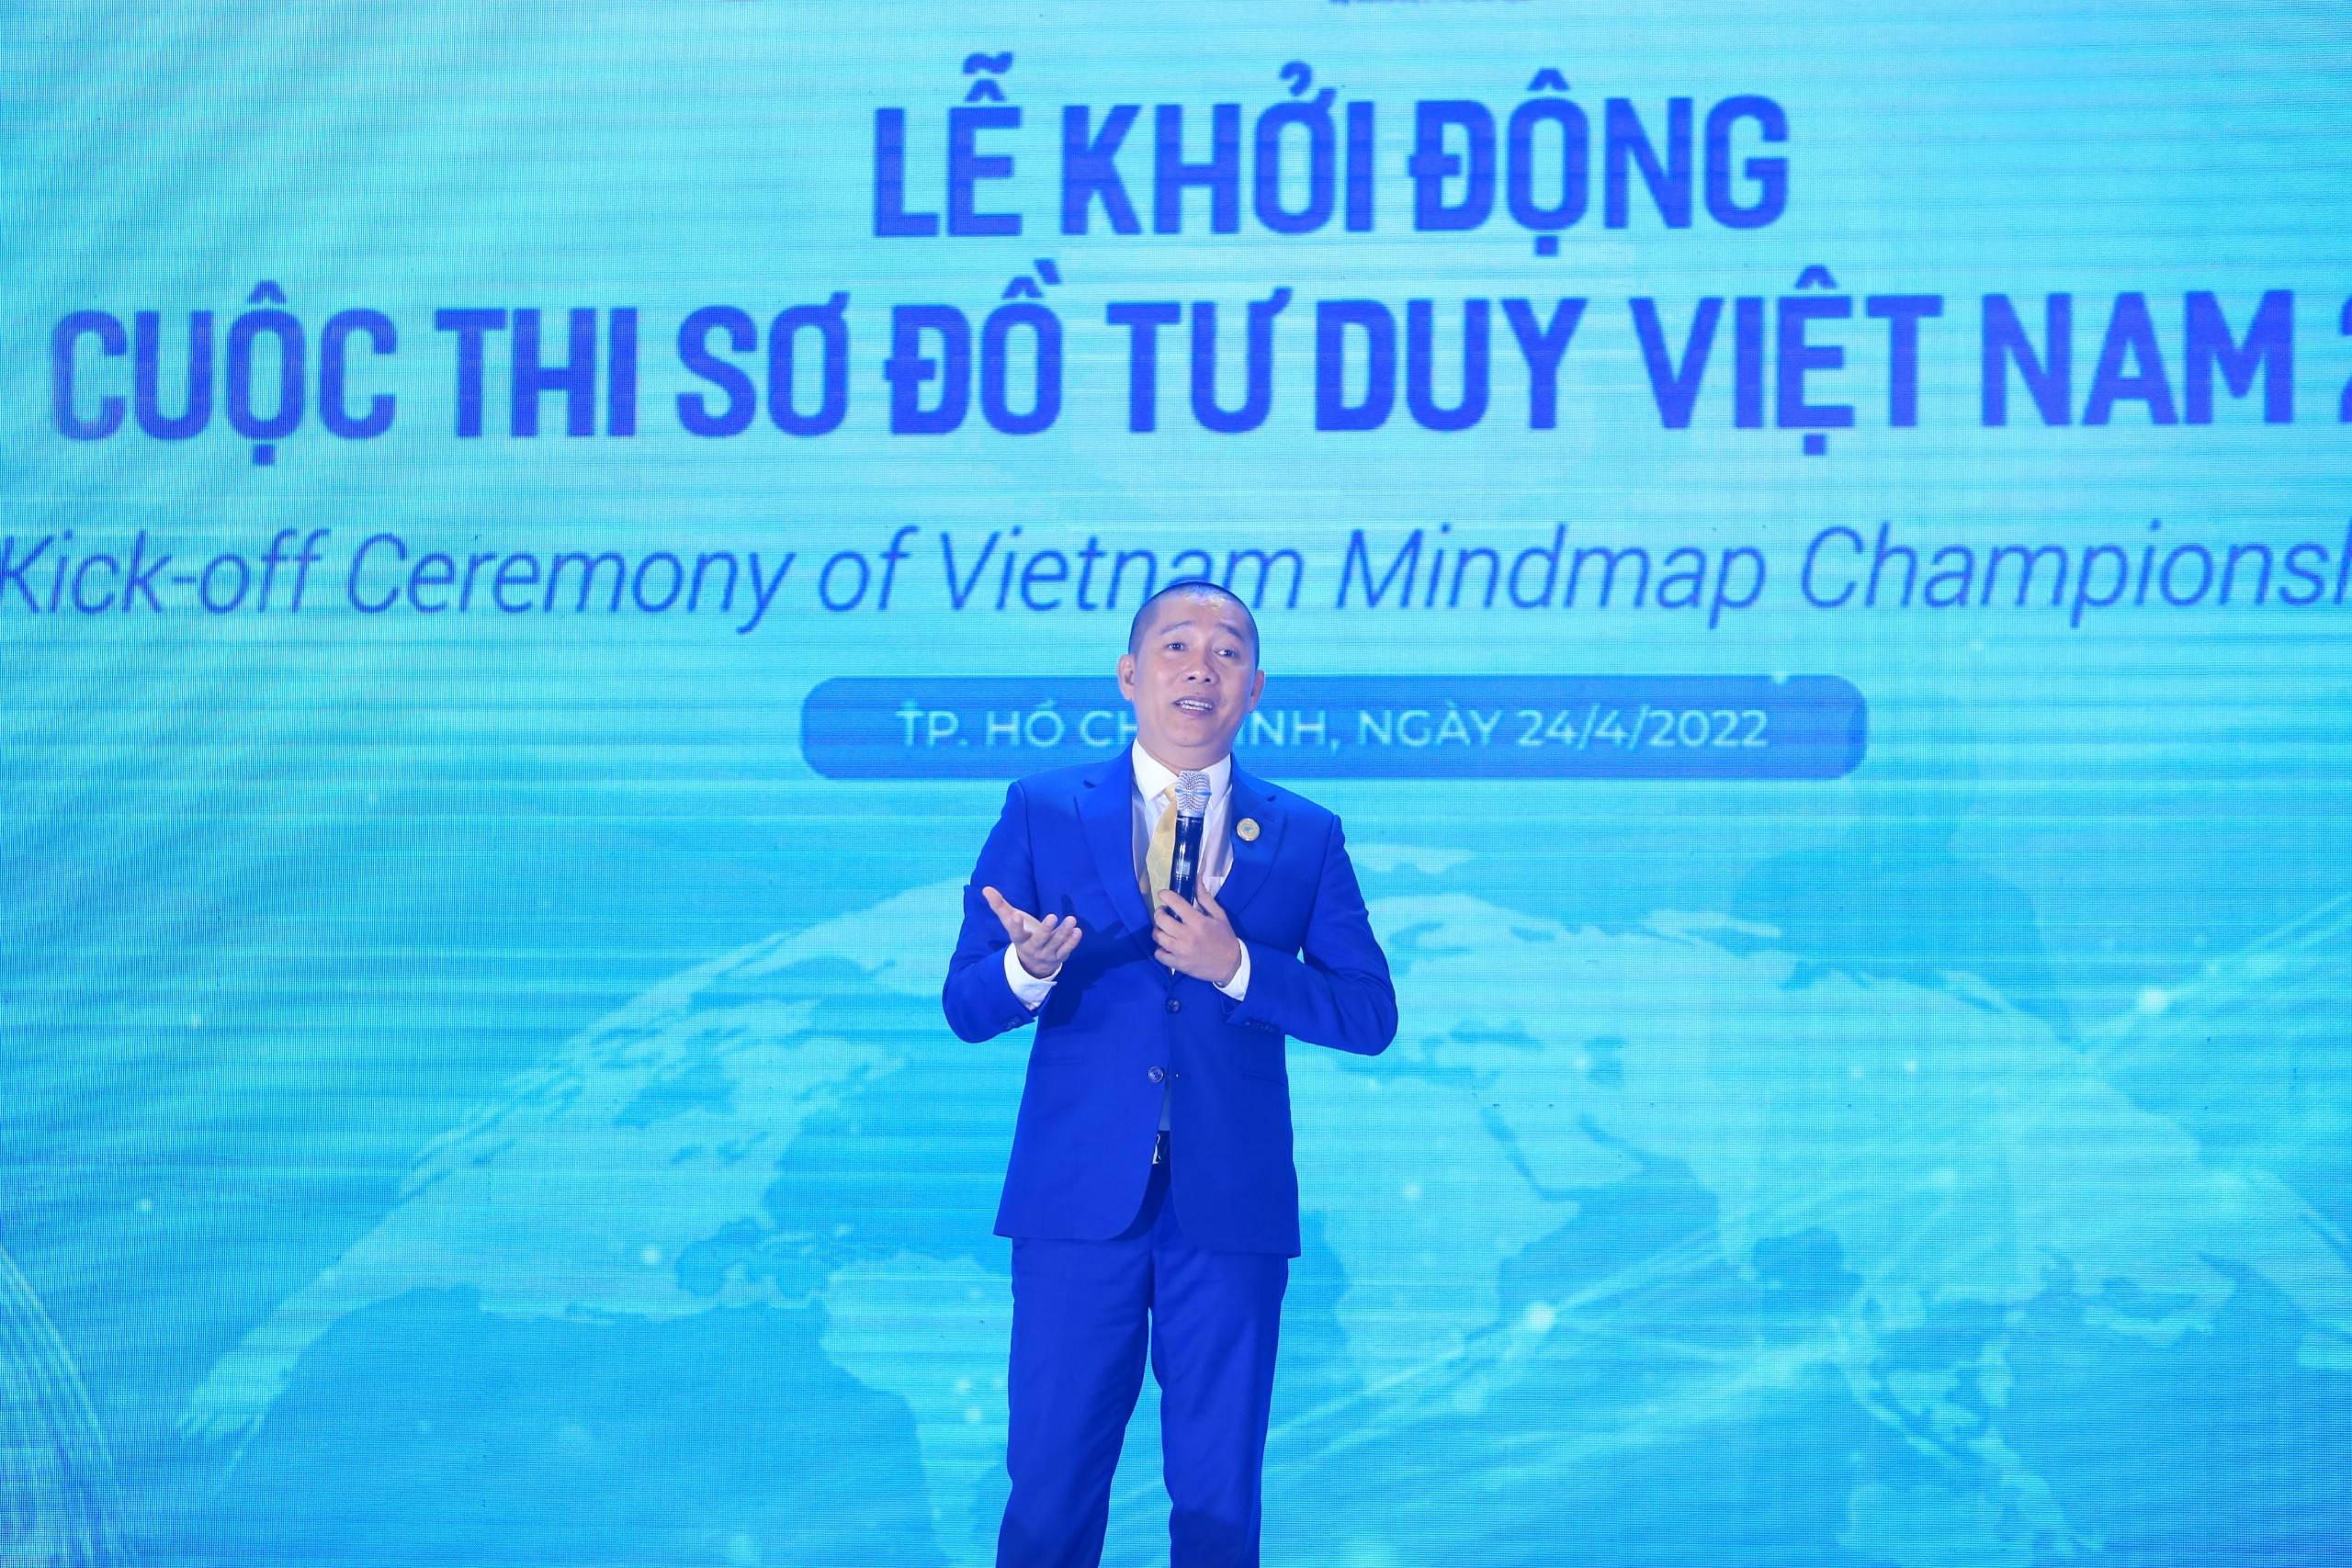 Việt Nam 2022 - một sự kiện quan trọng đánh dấu bước phát triển của đất nước trong tương lai. Nếu bạn muốn hiểu rõ hơn về sắc thái, mục tiêu và chiến lược của Việt Nam 2022, hãy đón xem sơ đồ tư duy Việt Nam 2022 để nắm bắt mọi thông tin một cách đầy đủ và chính xác.